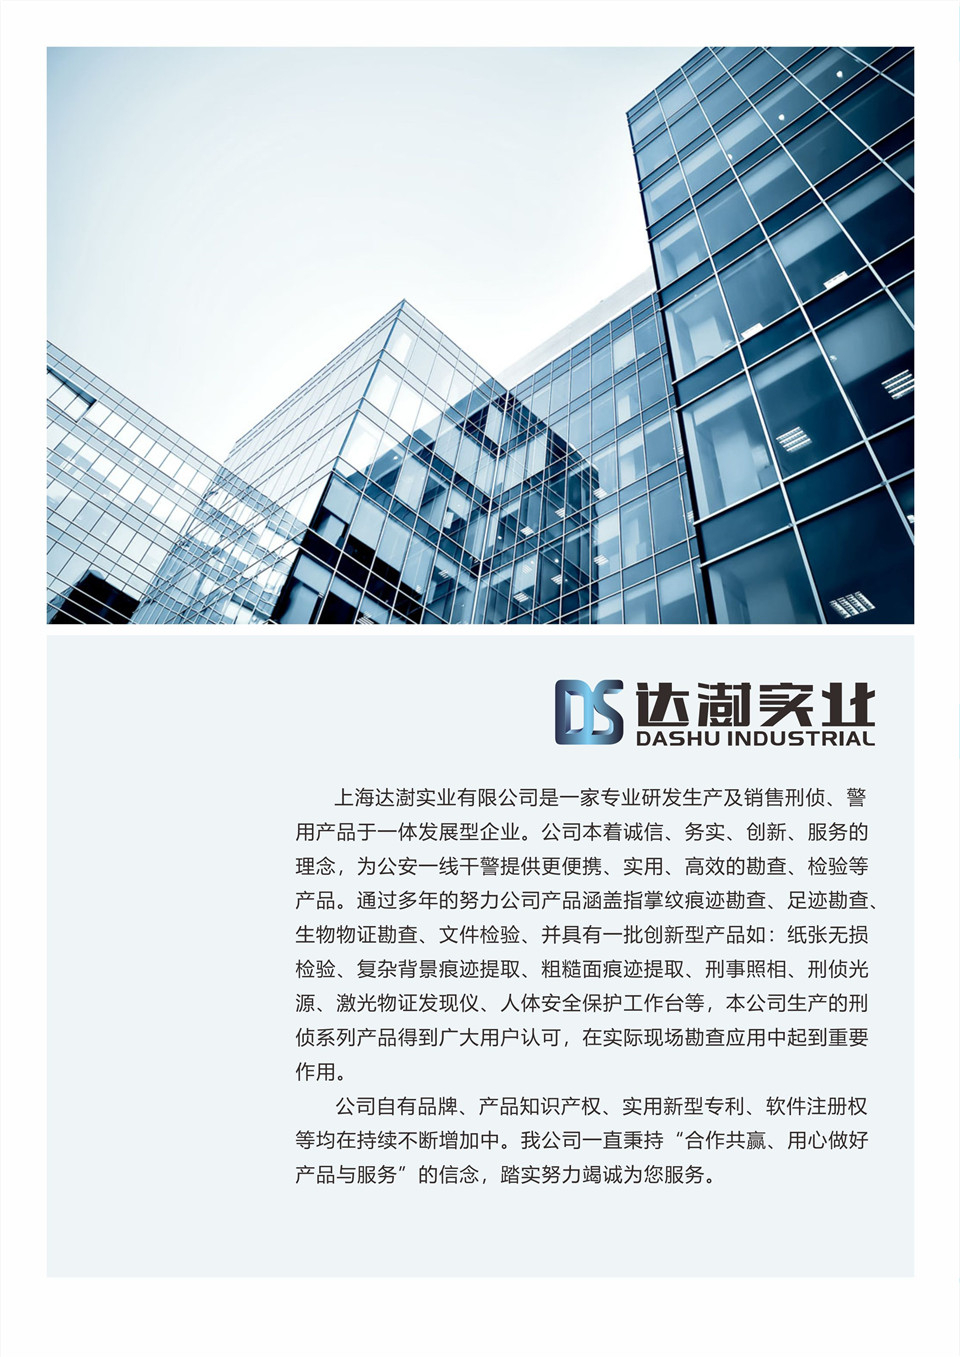 上海达澍实业有限公司宣传画册--自产产品篇(组图)